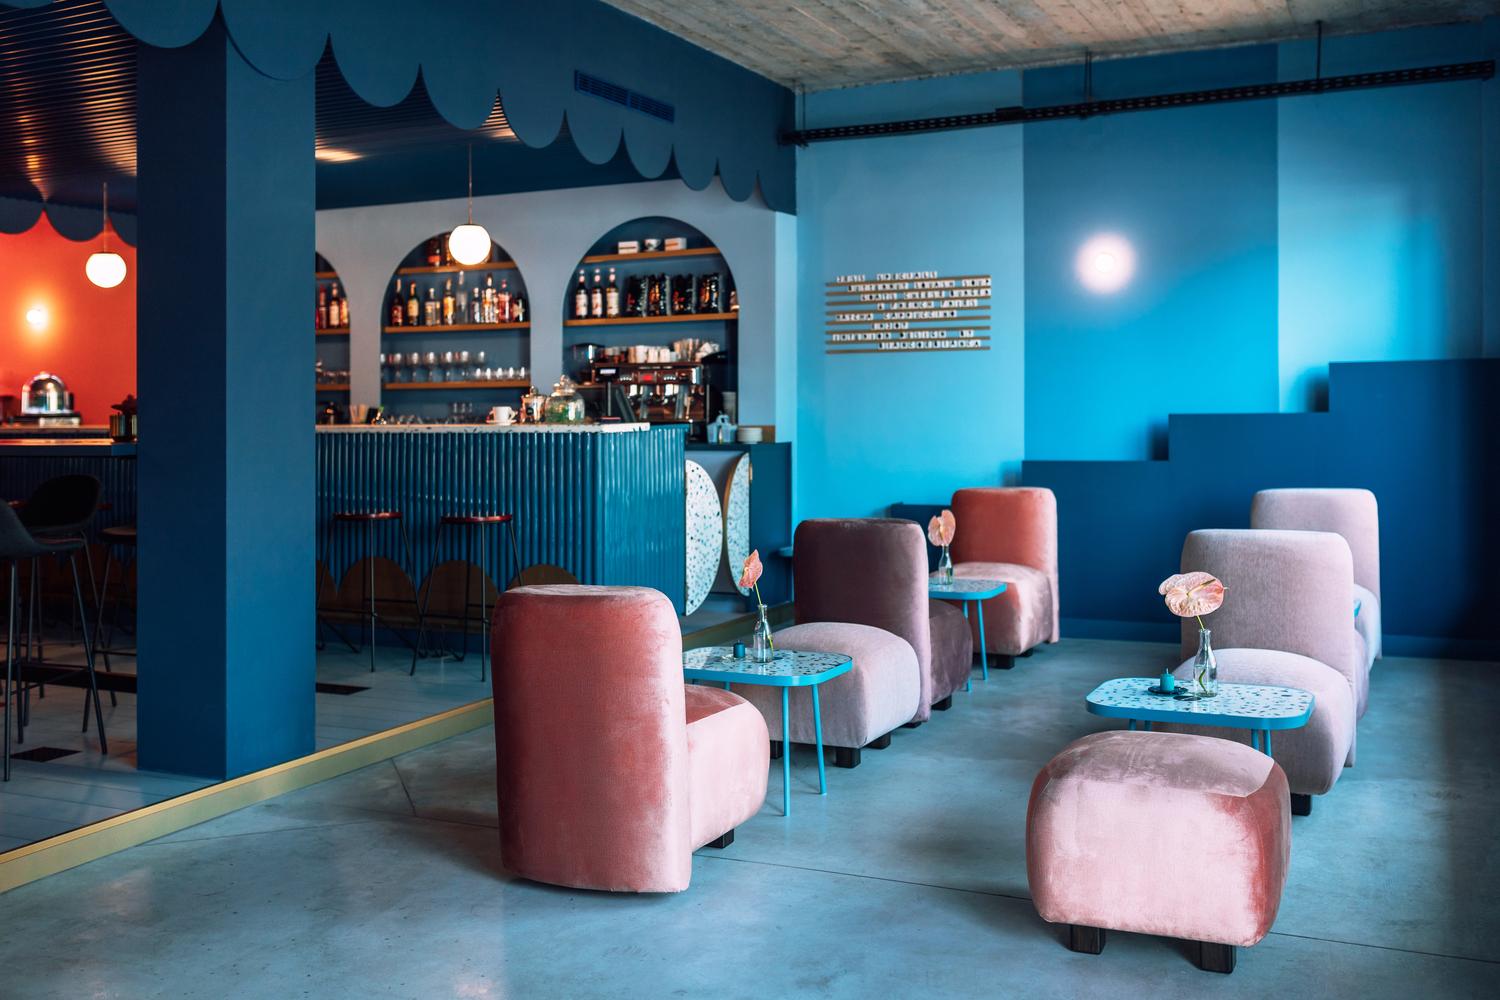 【羅馬尼亞新潮餐廳】 以鮮豔色彩圖案 突出空間個性